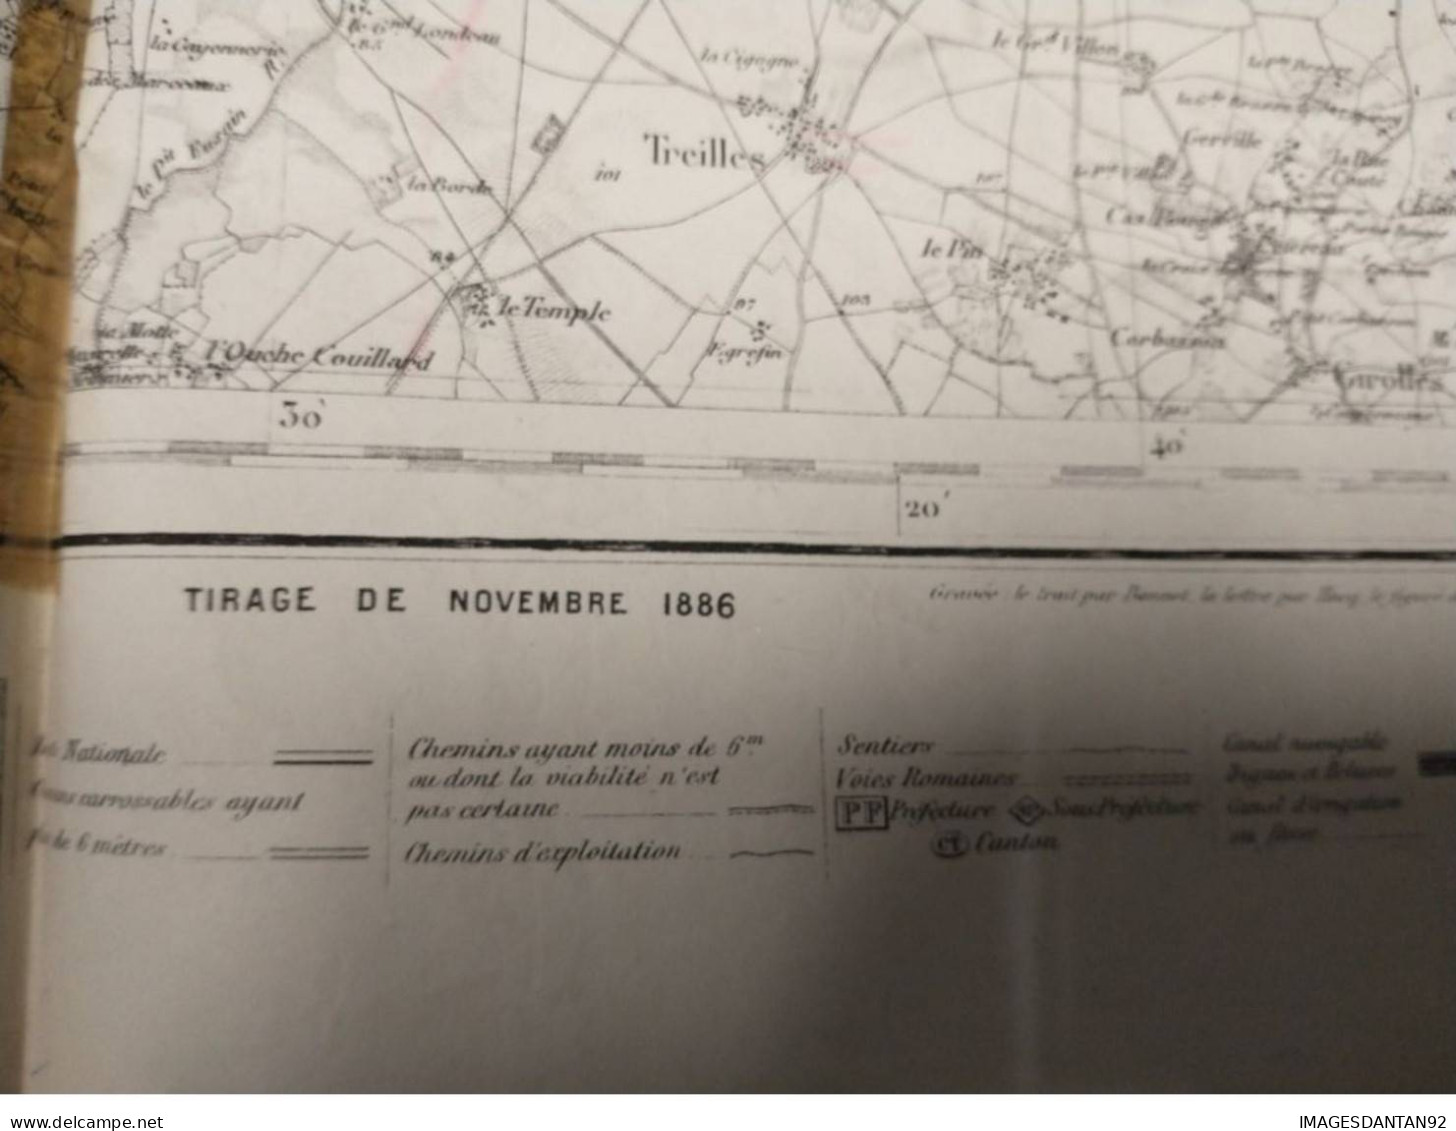 77 FONTAINEBLEAU GRAND PLAN DE 1886 LEVEE PAR OFFICIERS CORPS D ETAT MAJOR DE 1839  CACHET STEAM YACHT DAUPHIN CAPITAINE - Topographische Karten